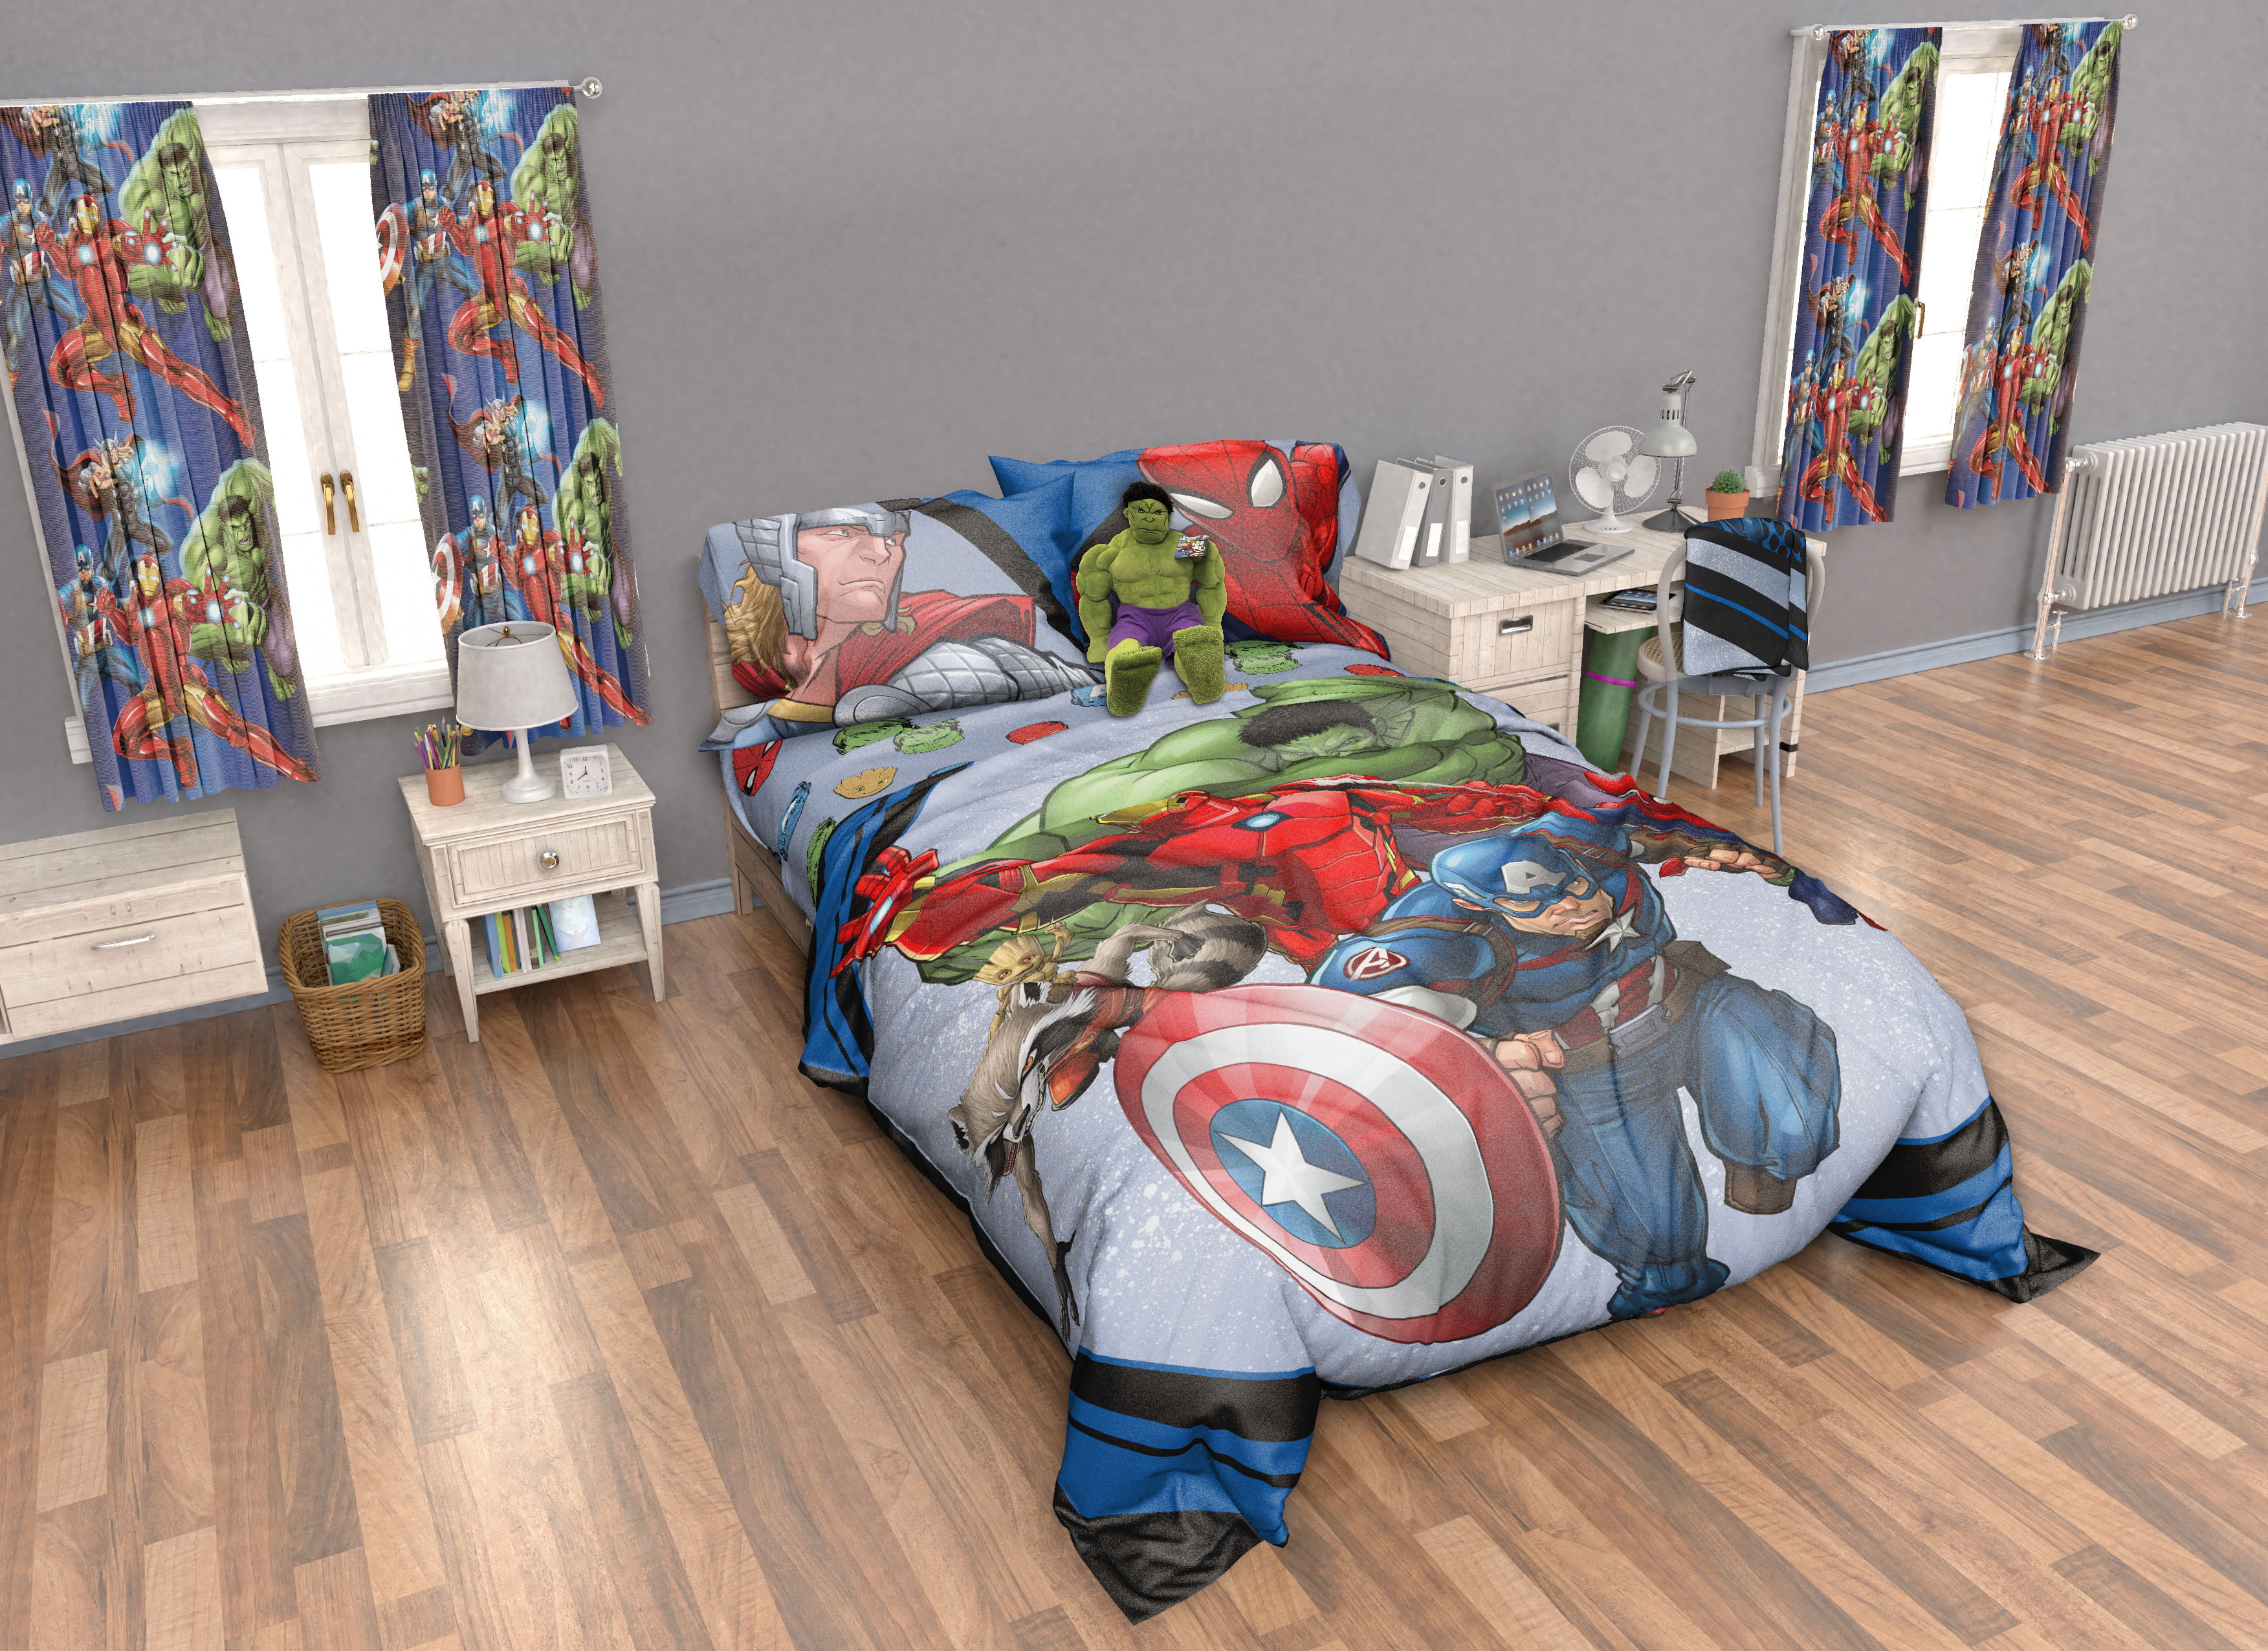 avengers kids bed